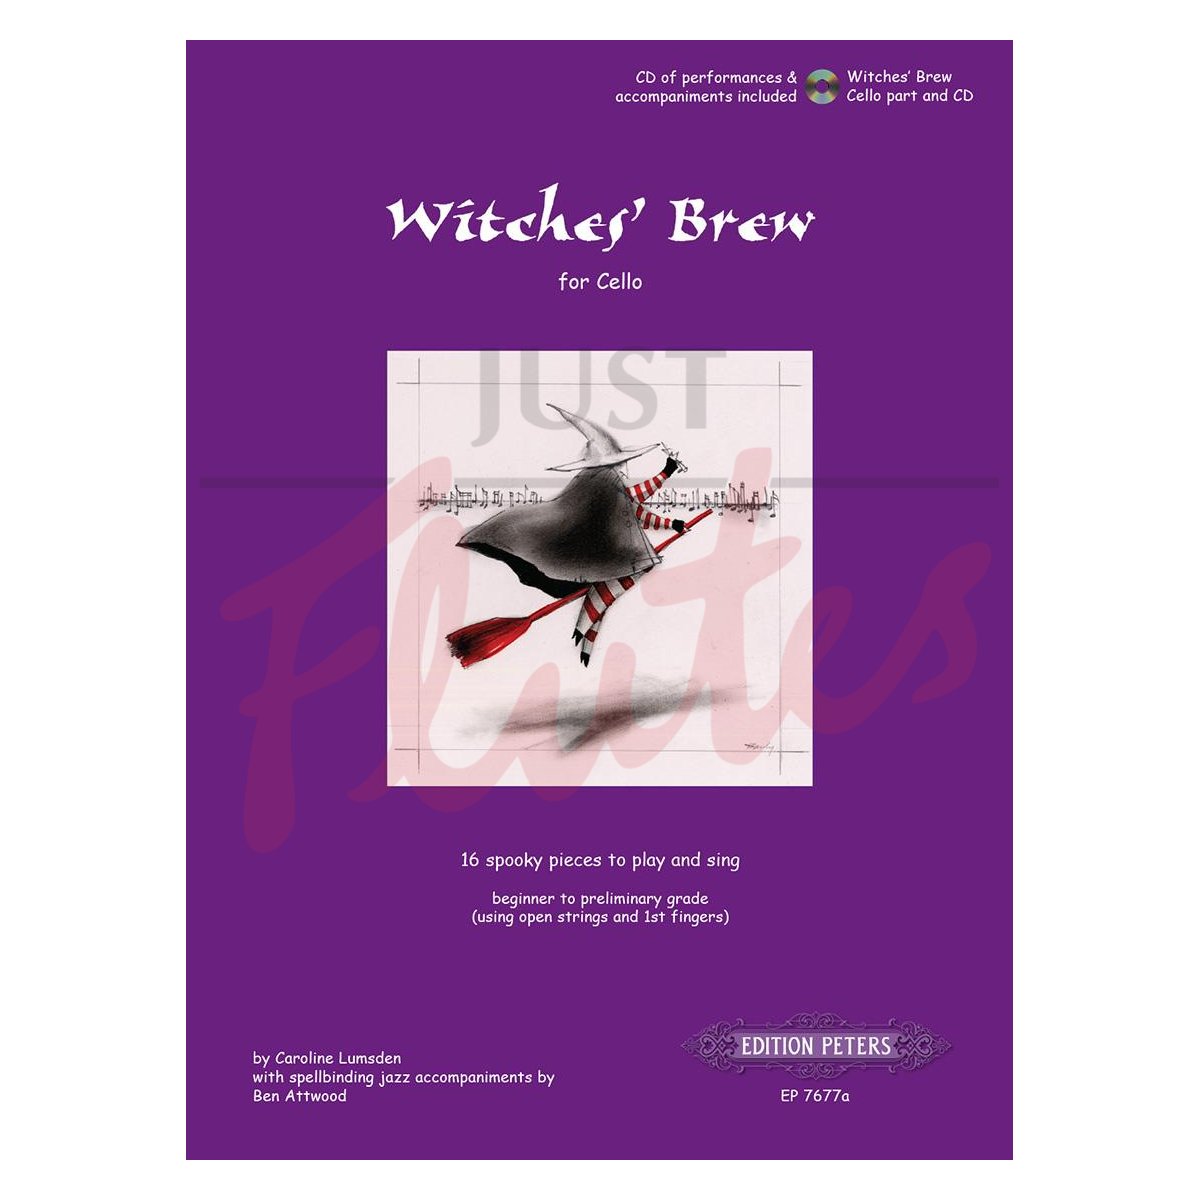 Witches' Brew [Cello]